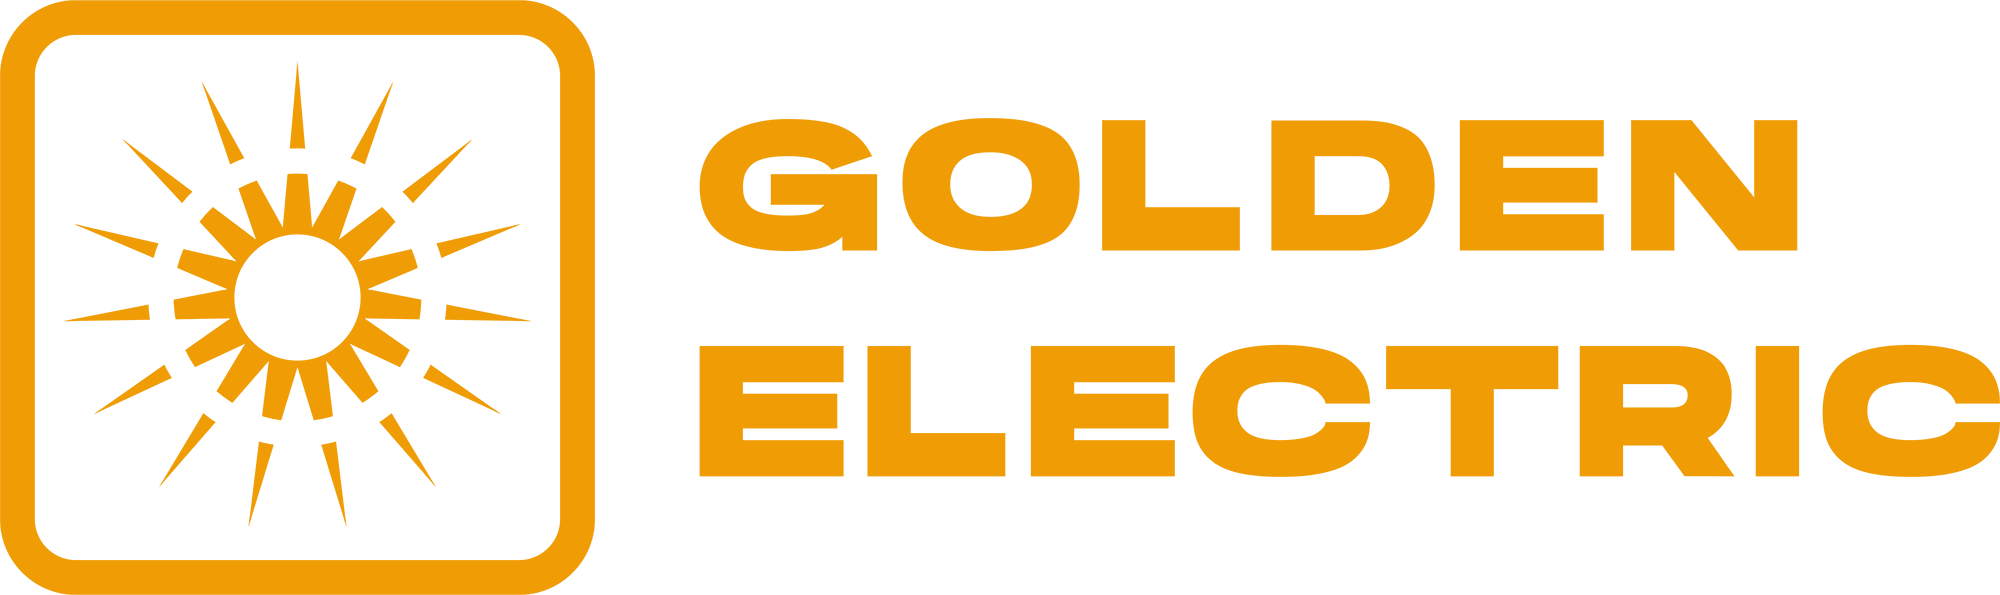 Golden electric - Electromovilidad Chile - Energía fotovoltaica - ingeniería eléctrica